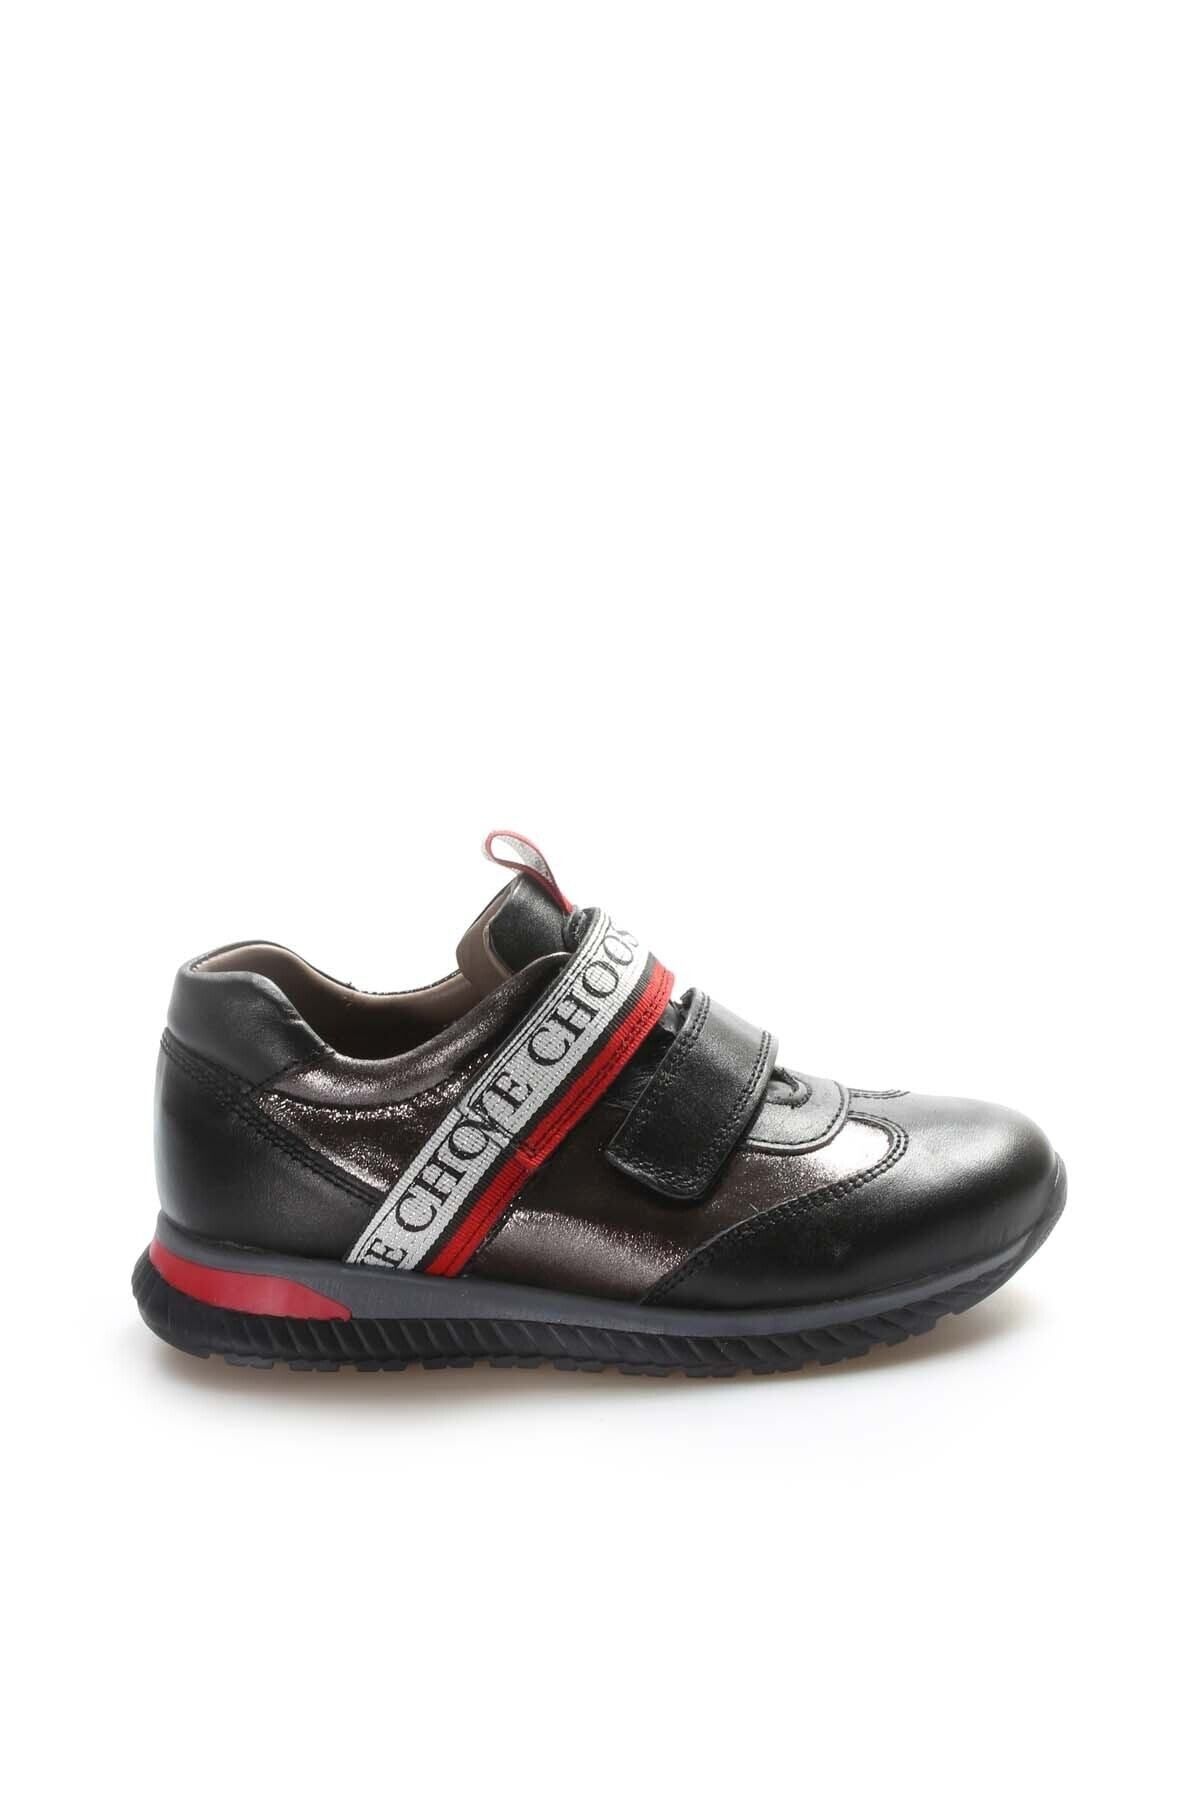 Fast Step Unisex Hakiki Deri Cırtlı Bantlı Rahat Sneaker Spor Günlük Çocuk Okul Ayakkabı 006xa1030